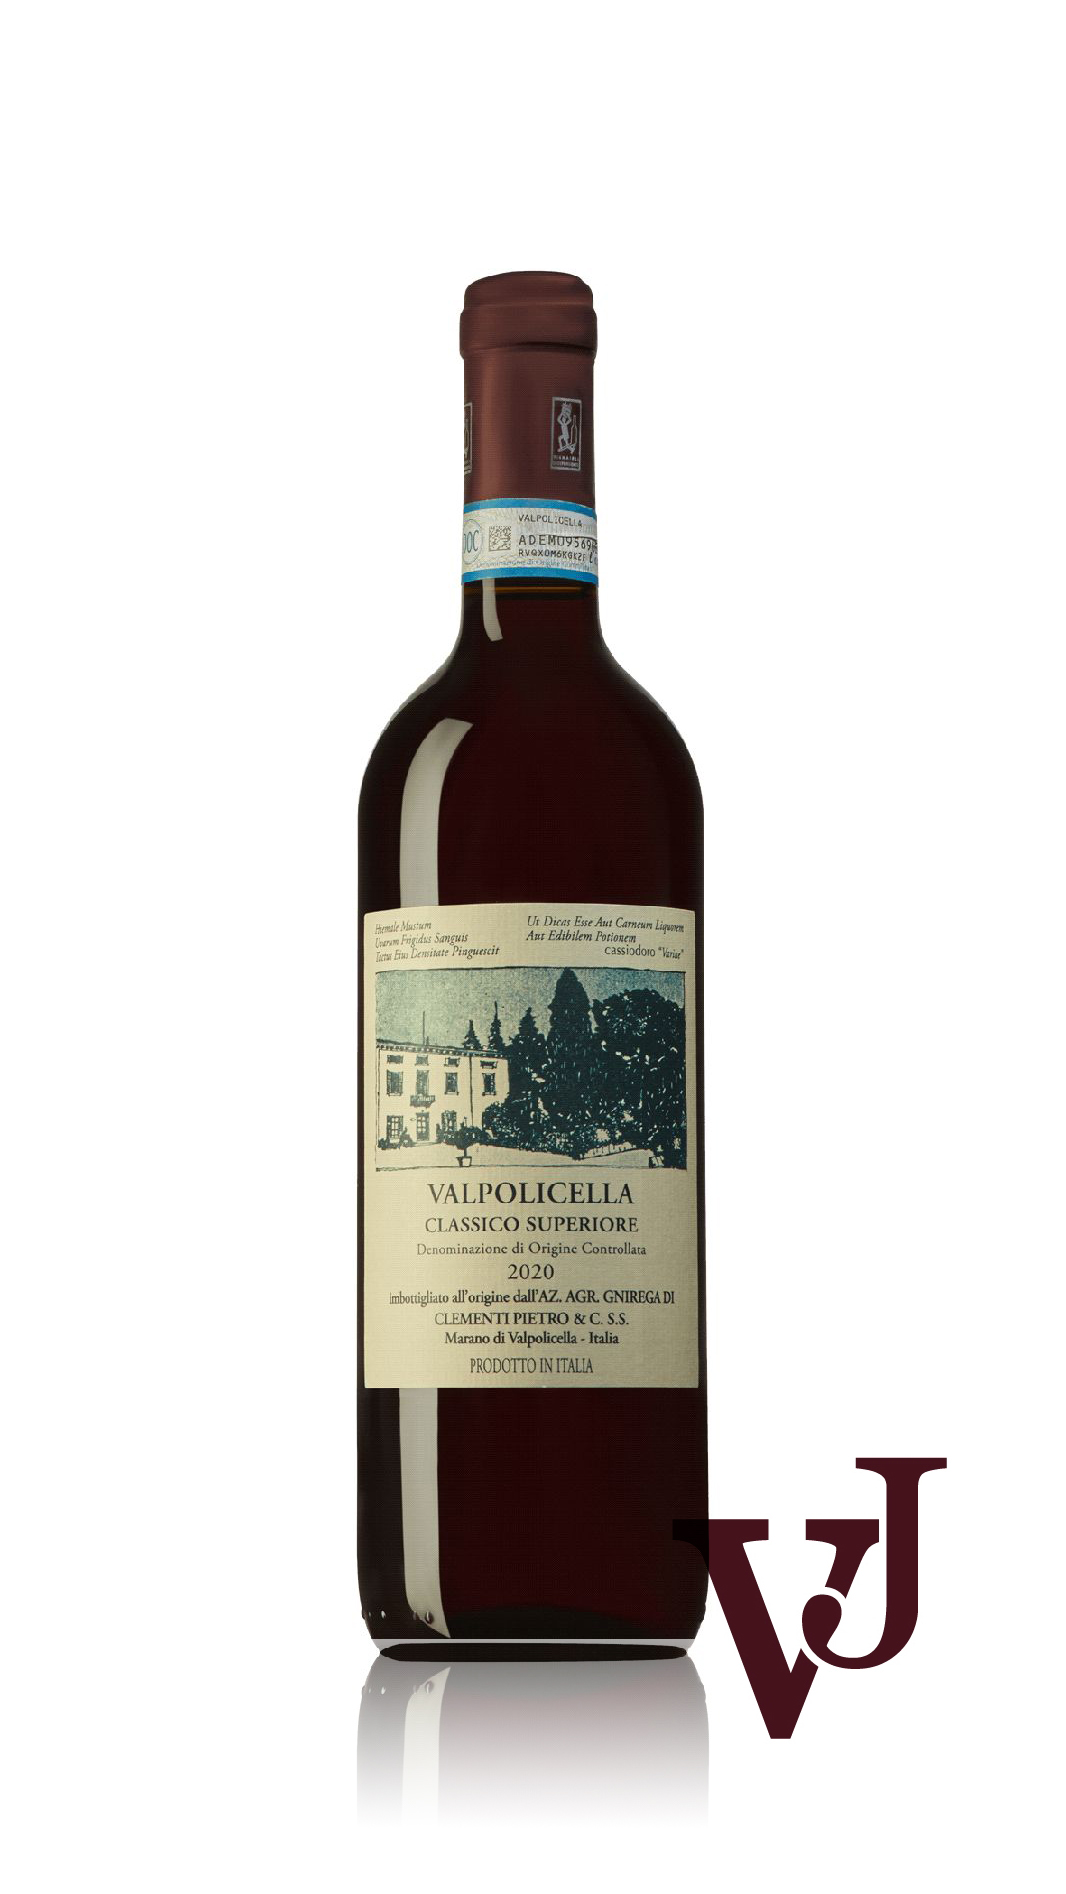 Rött Vin - Valpolicella Classico Superiore Vini Pietro Clementi 2020 artikel nummer 9472201 från producenten Vini Pietro Clementi från området Italien